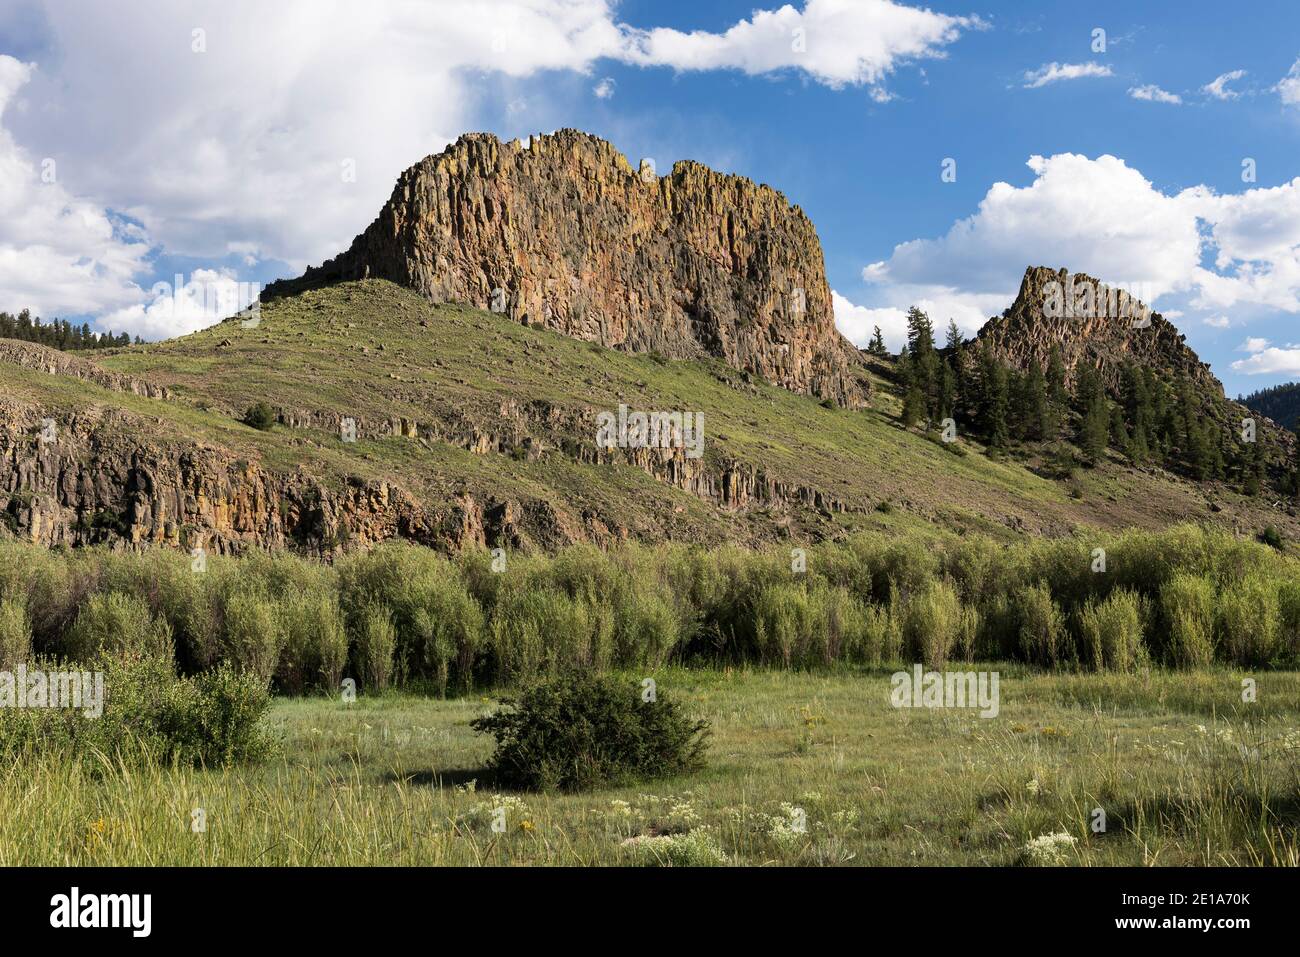 La formation rocheuse de Castles est située dans la forêt nationale de San Isabel, Colorado. Banque D'Images